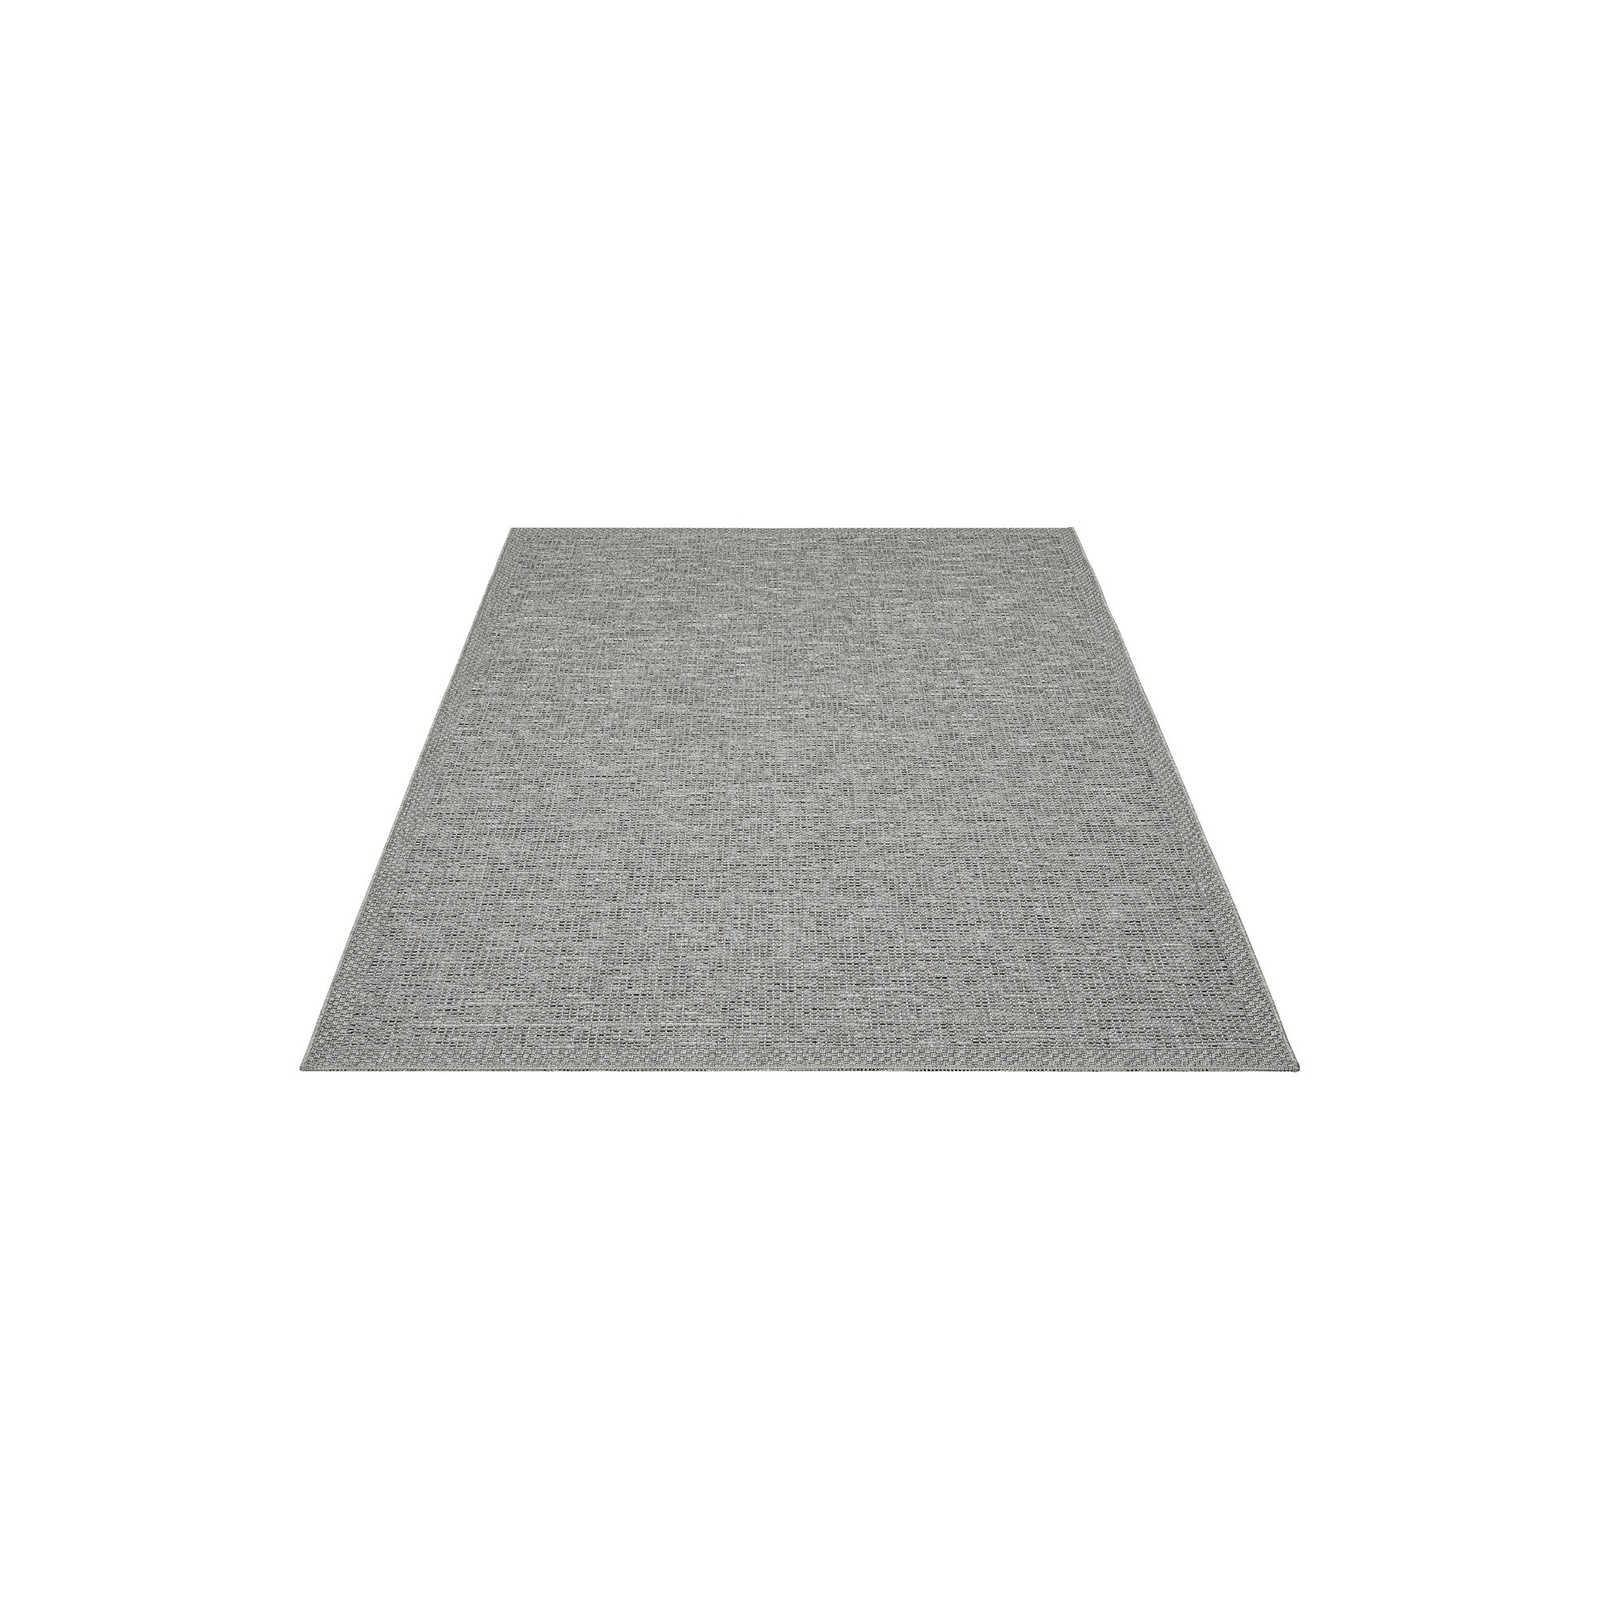 Eenvoudig vloerkleed voor buiten in grijs - 150 x 80 cm
